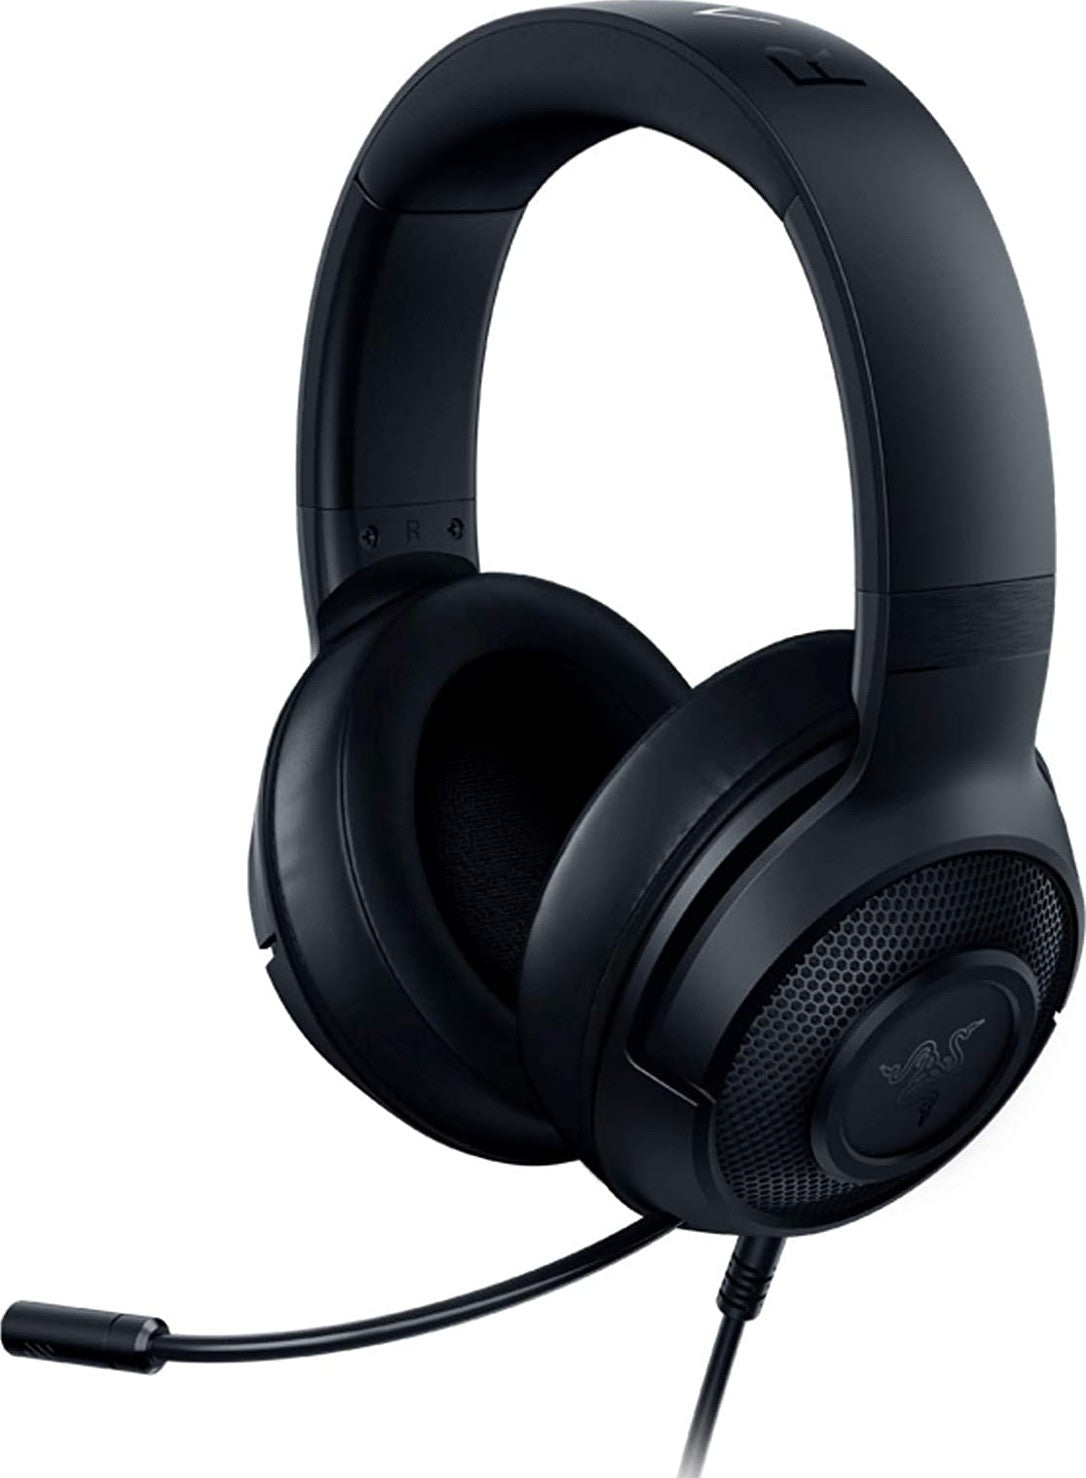 Buy Razer Kraken X lite Essential Head Set | Best Headphones